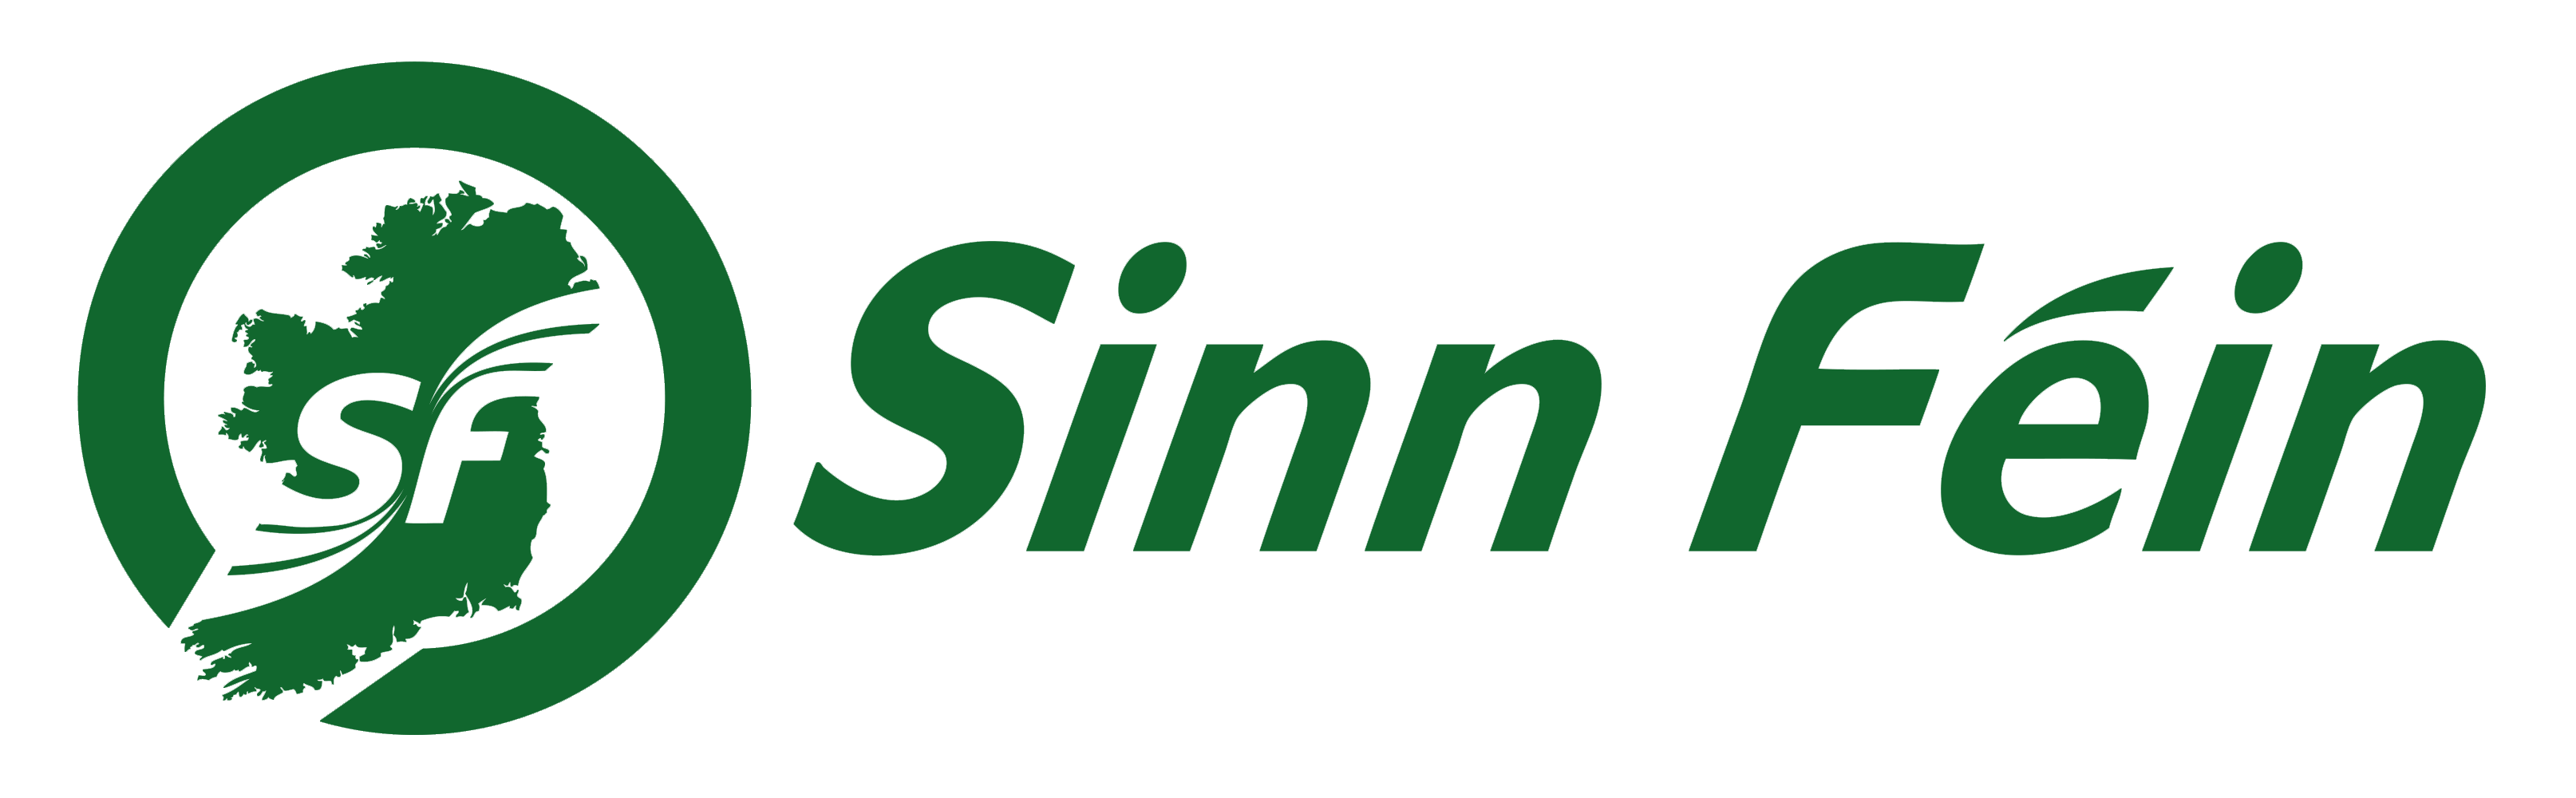 Cost of Living Survey - Sinn Féin